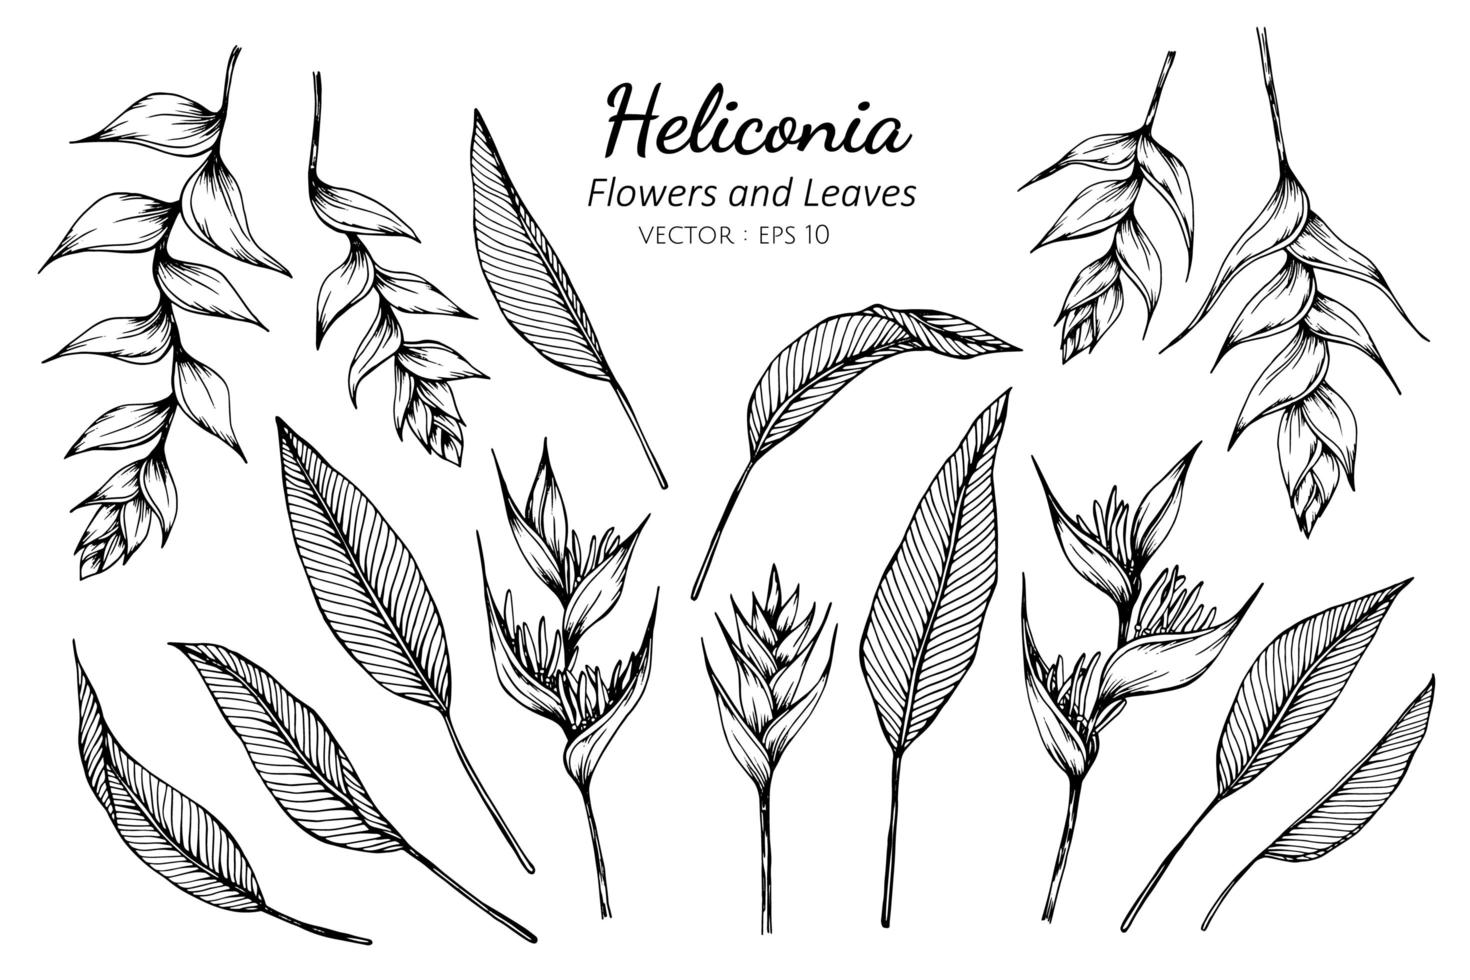 coleção de flores e folhas heliconia vetor